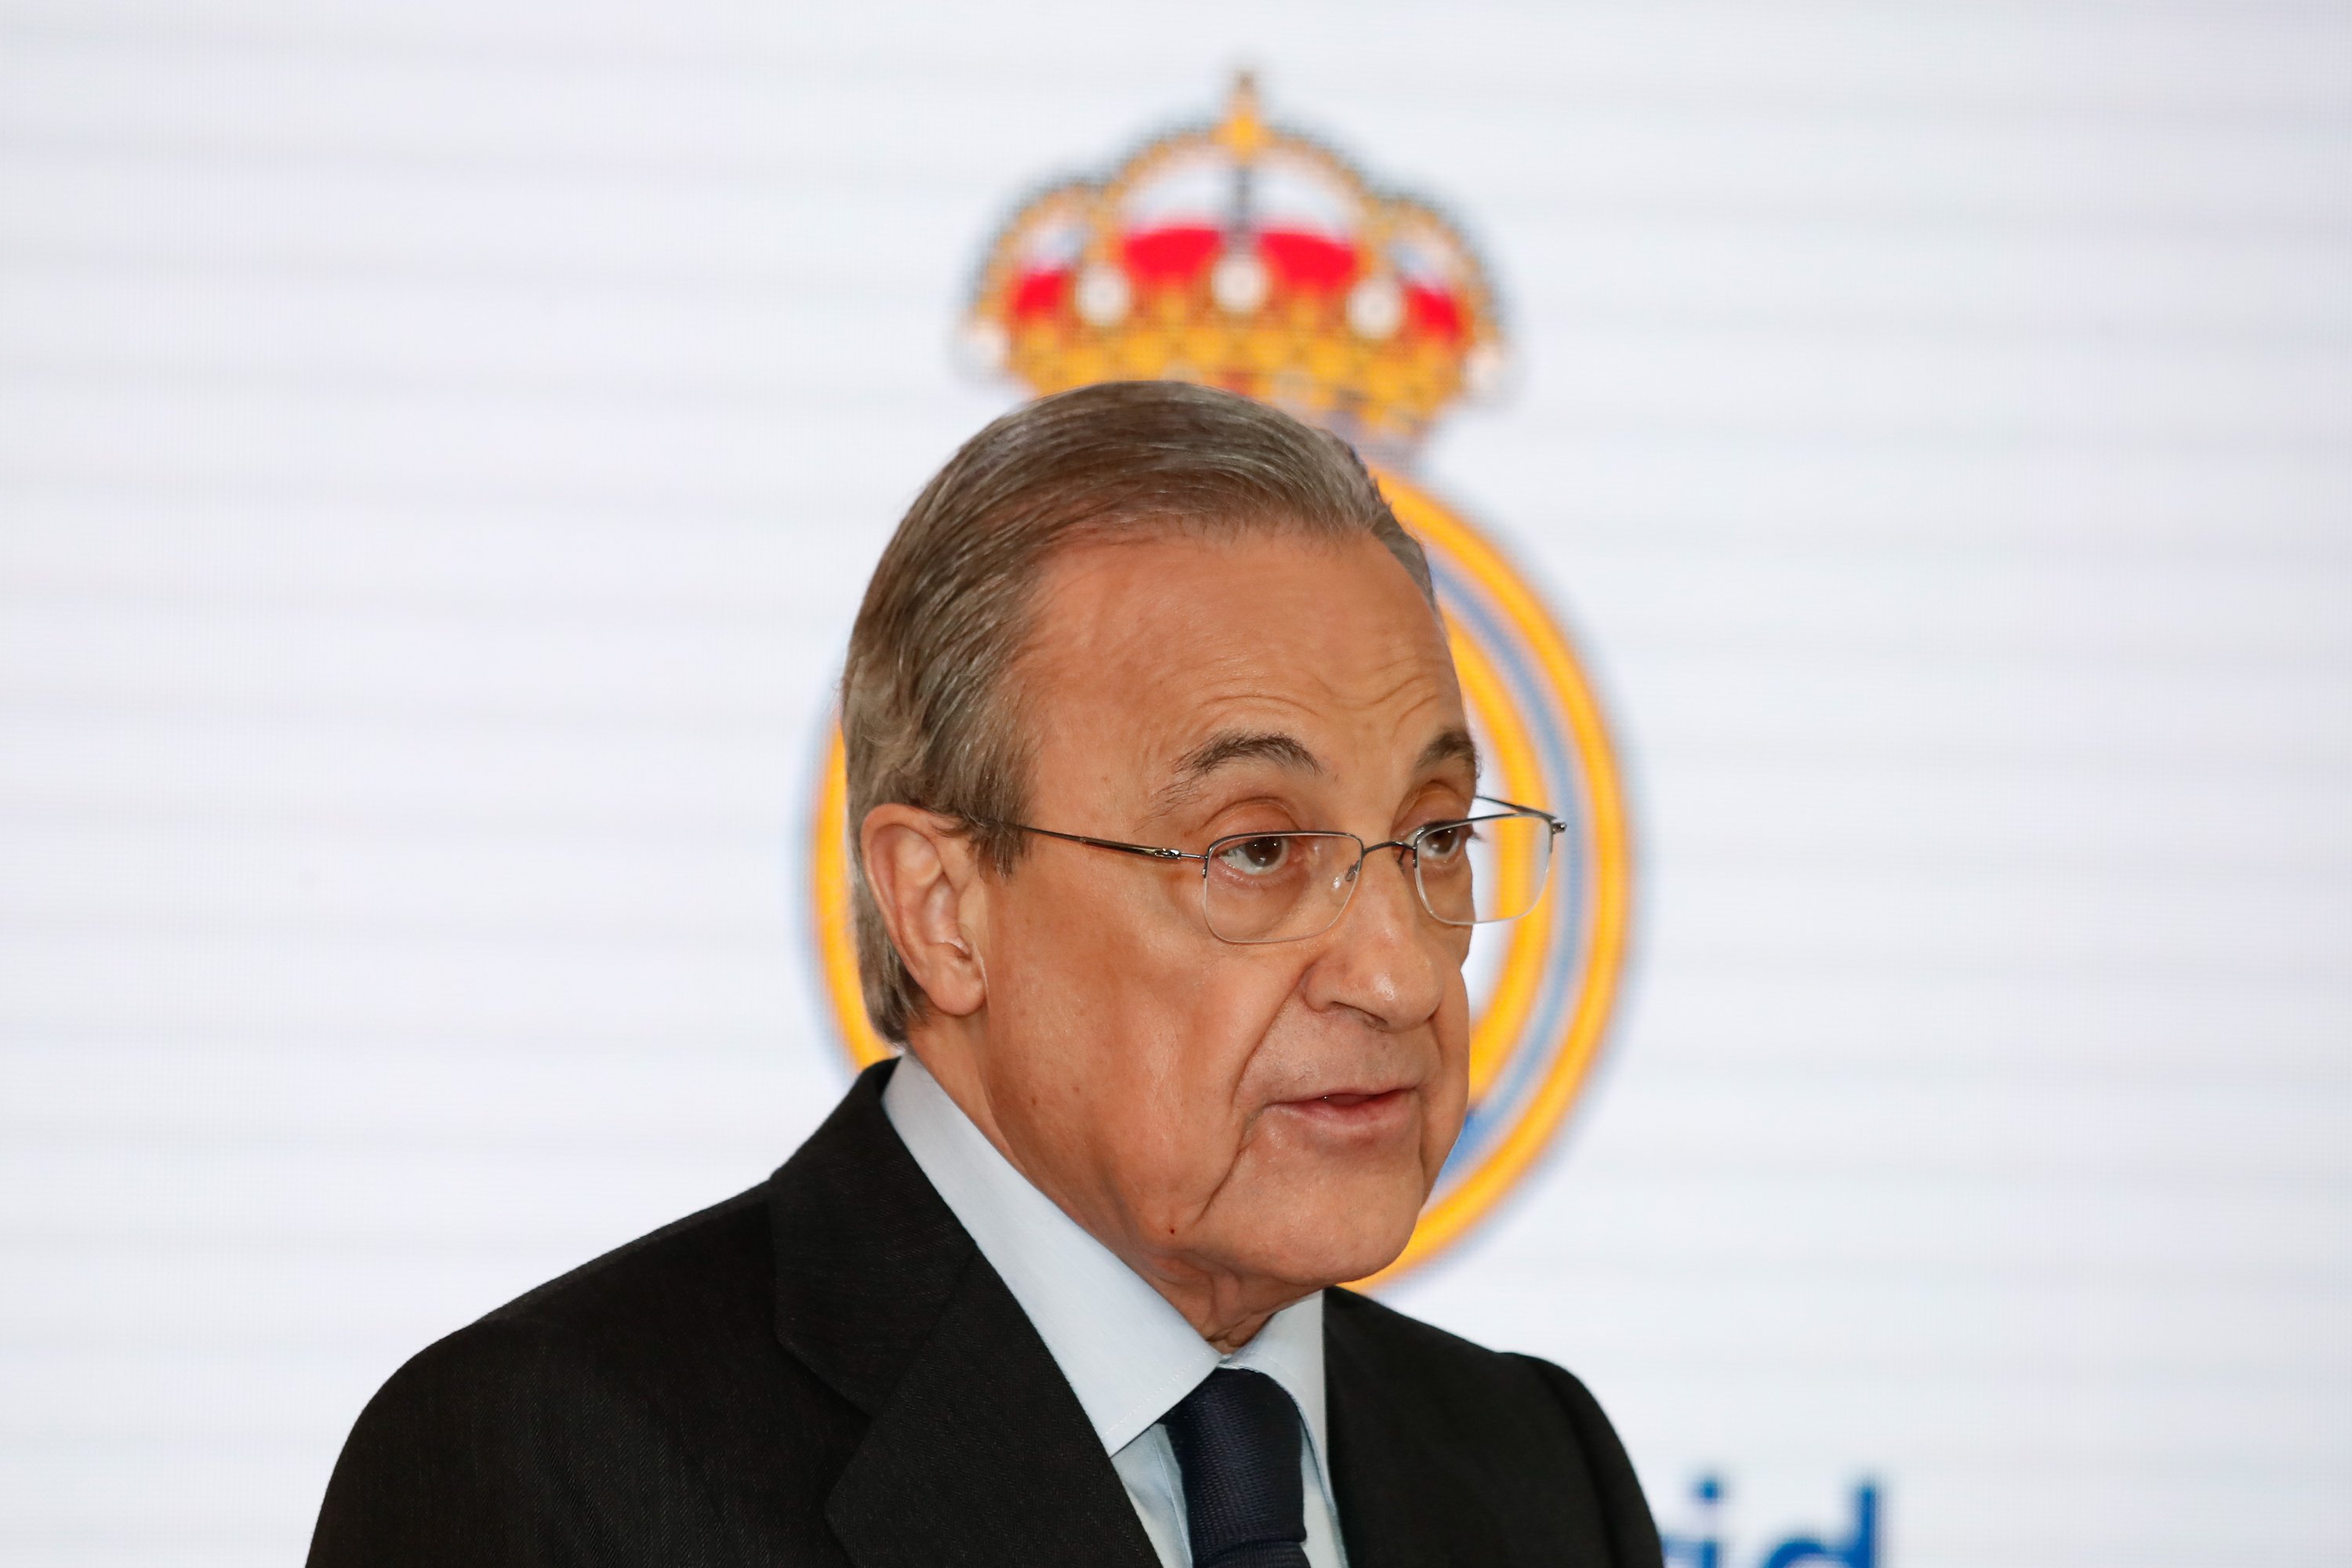 Una part de la UEFA vol castigar el Reial Madrid eliminant-lo de la Champions